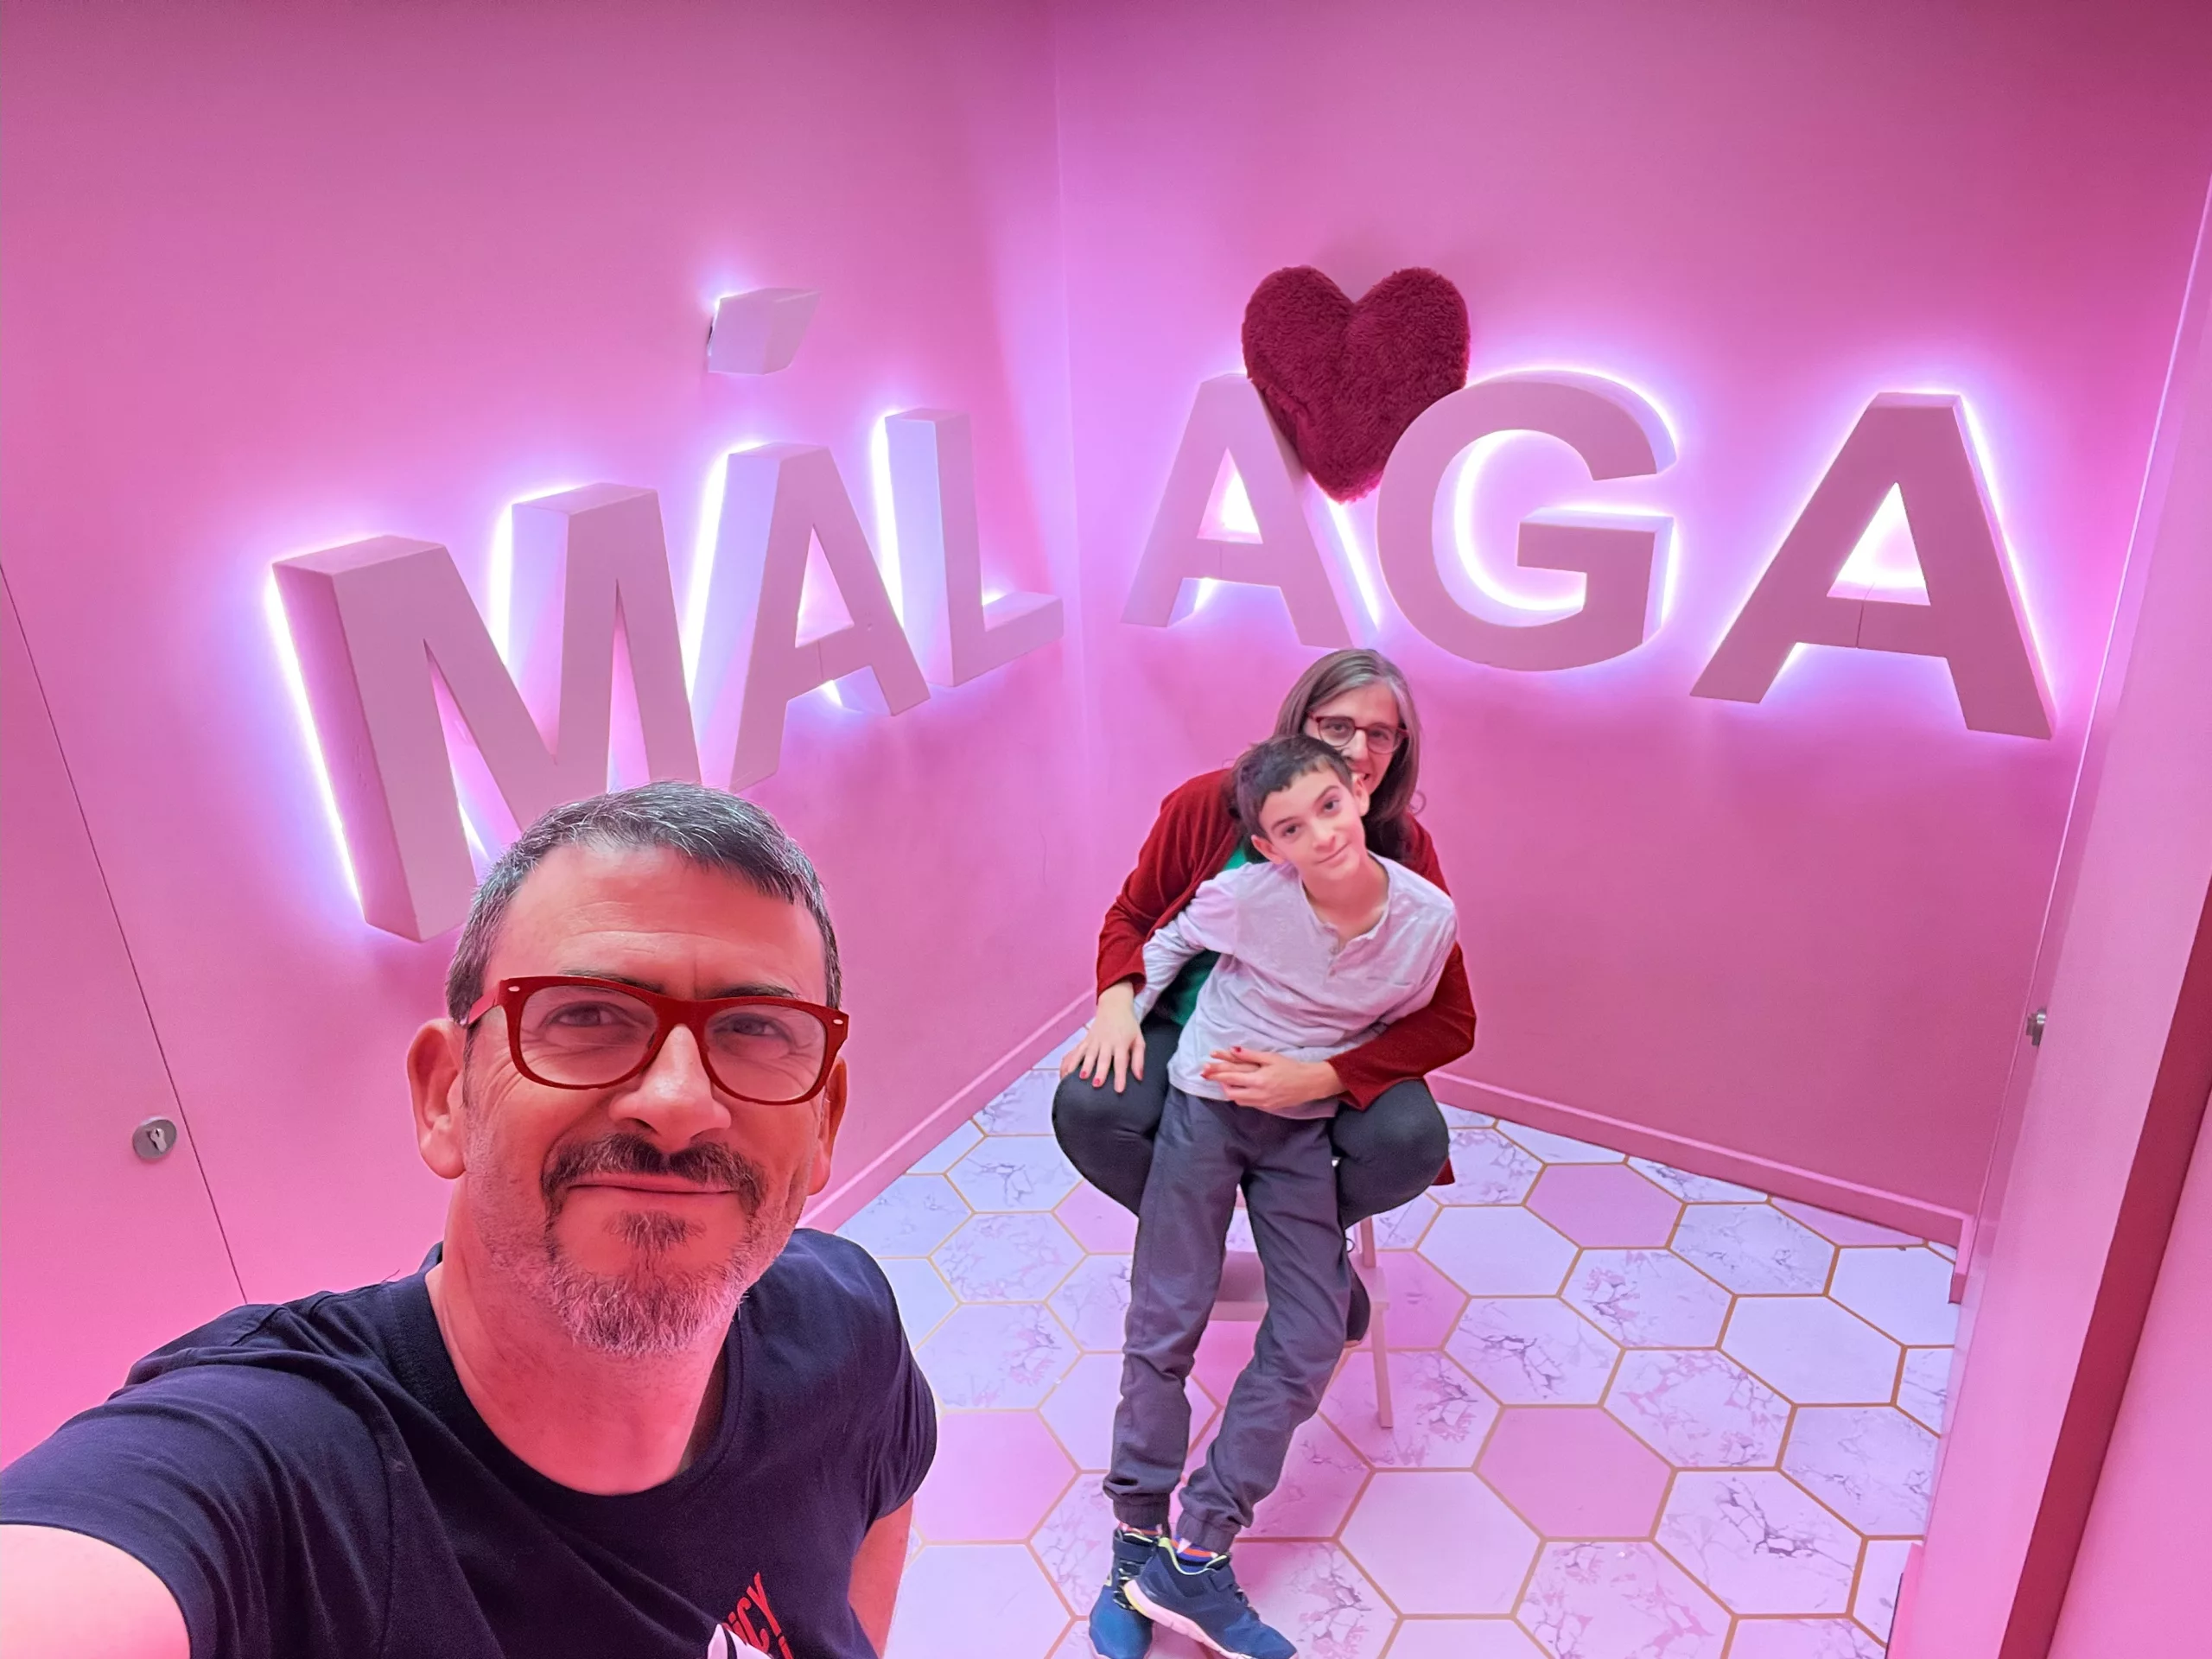 Cliché Selfie Gallery Málaga: galería interactiva para divertirse familia